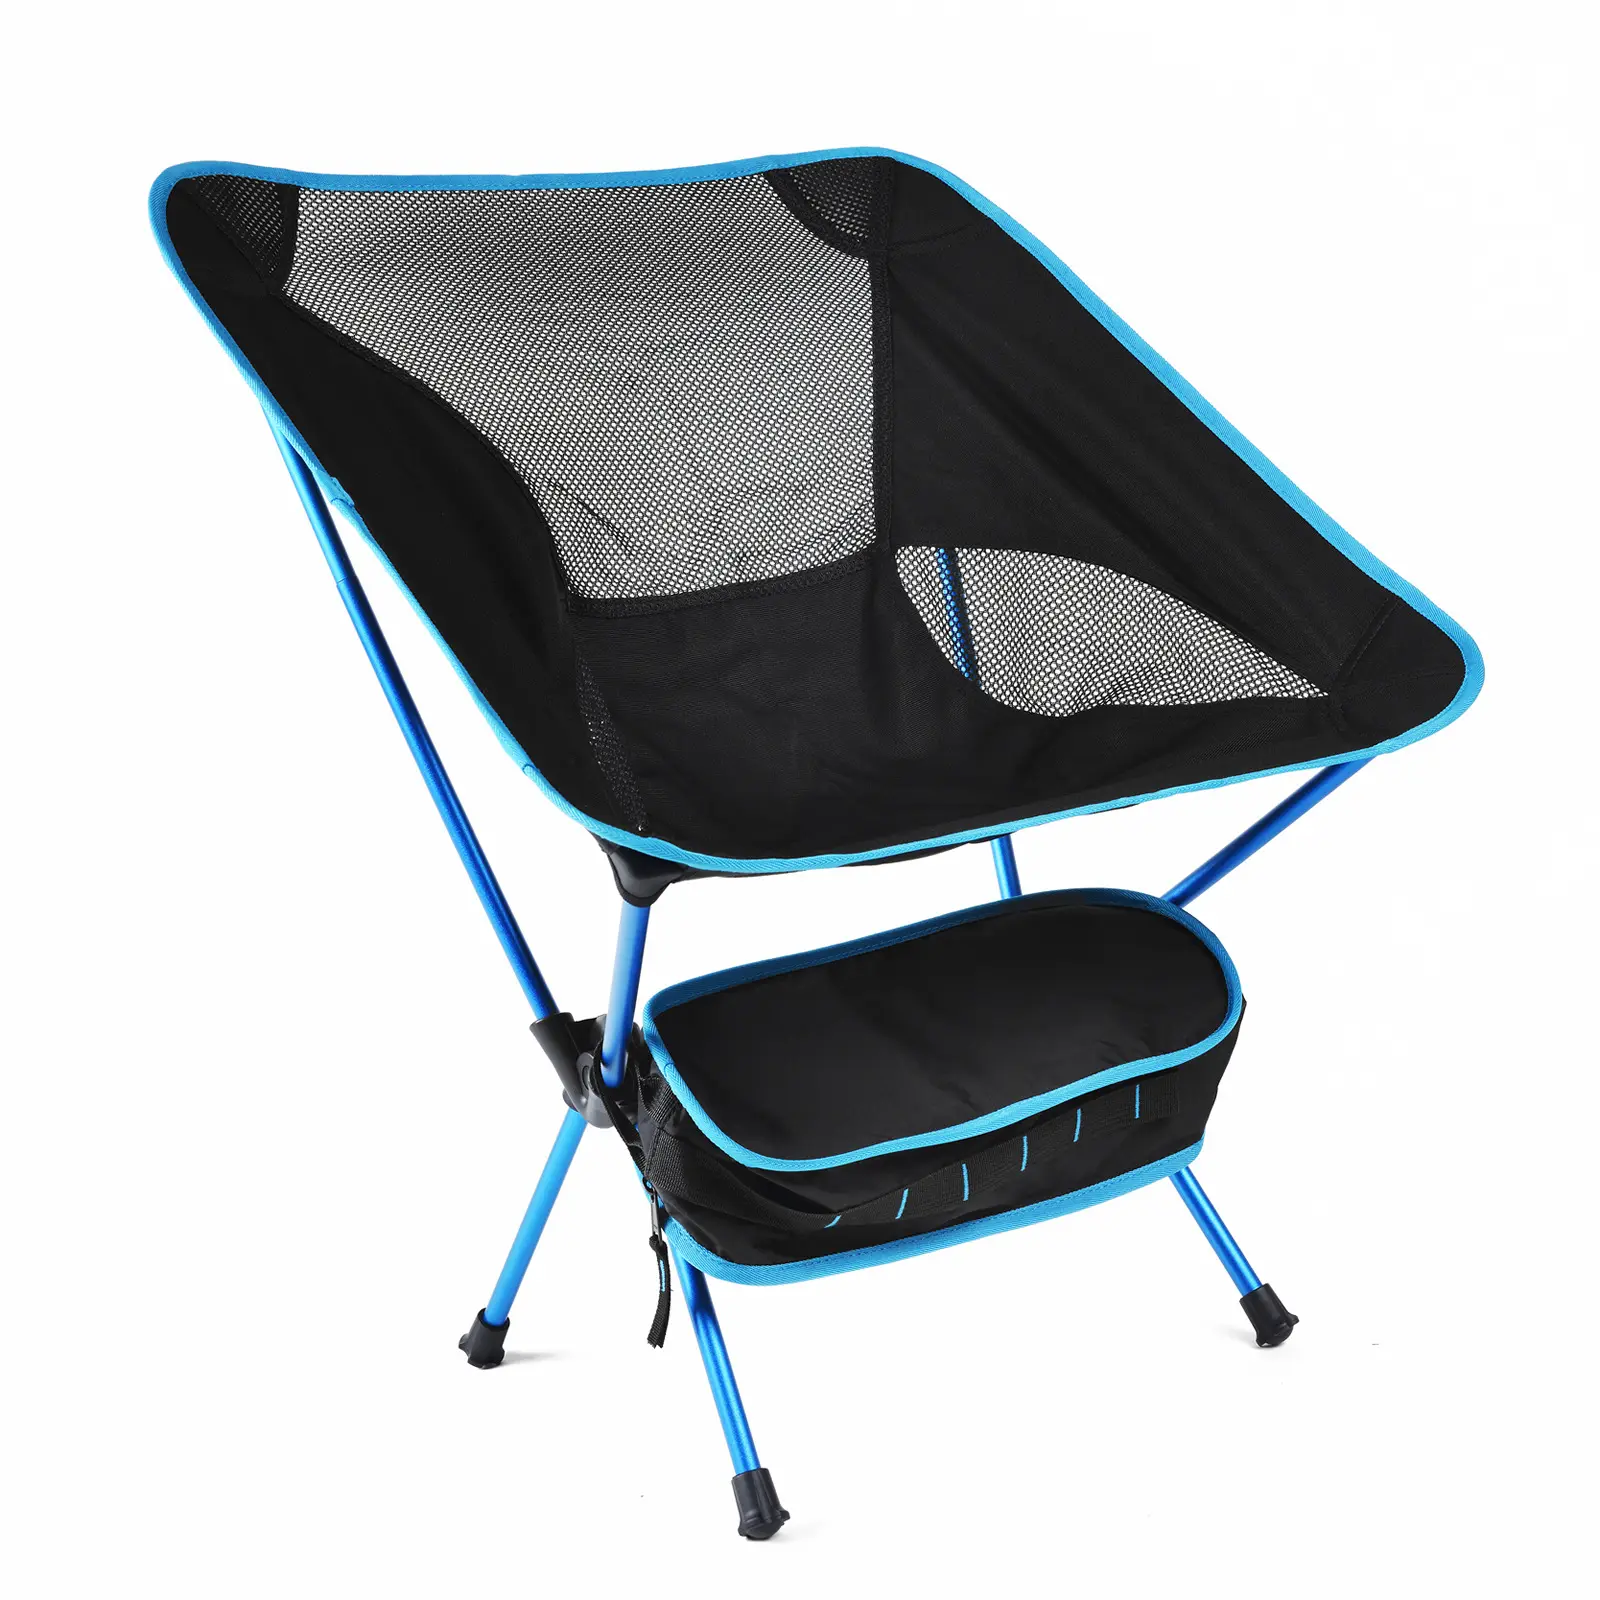 Taşınabilir açık katlanır sandalye alüminyum alaşımlı hafif kamp sandalyesi eğlence kamp ay sandalye balıkçılık için